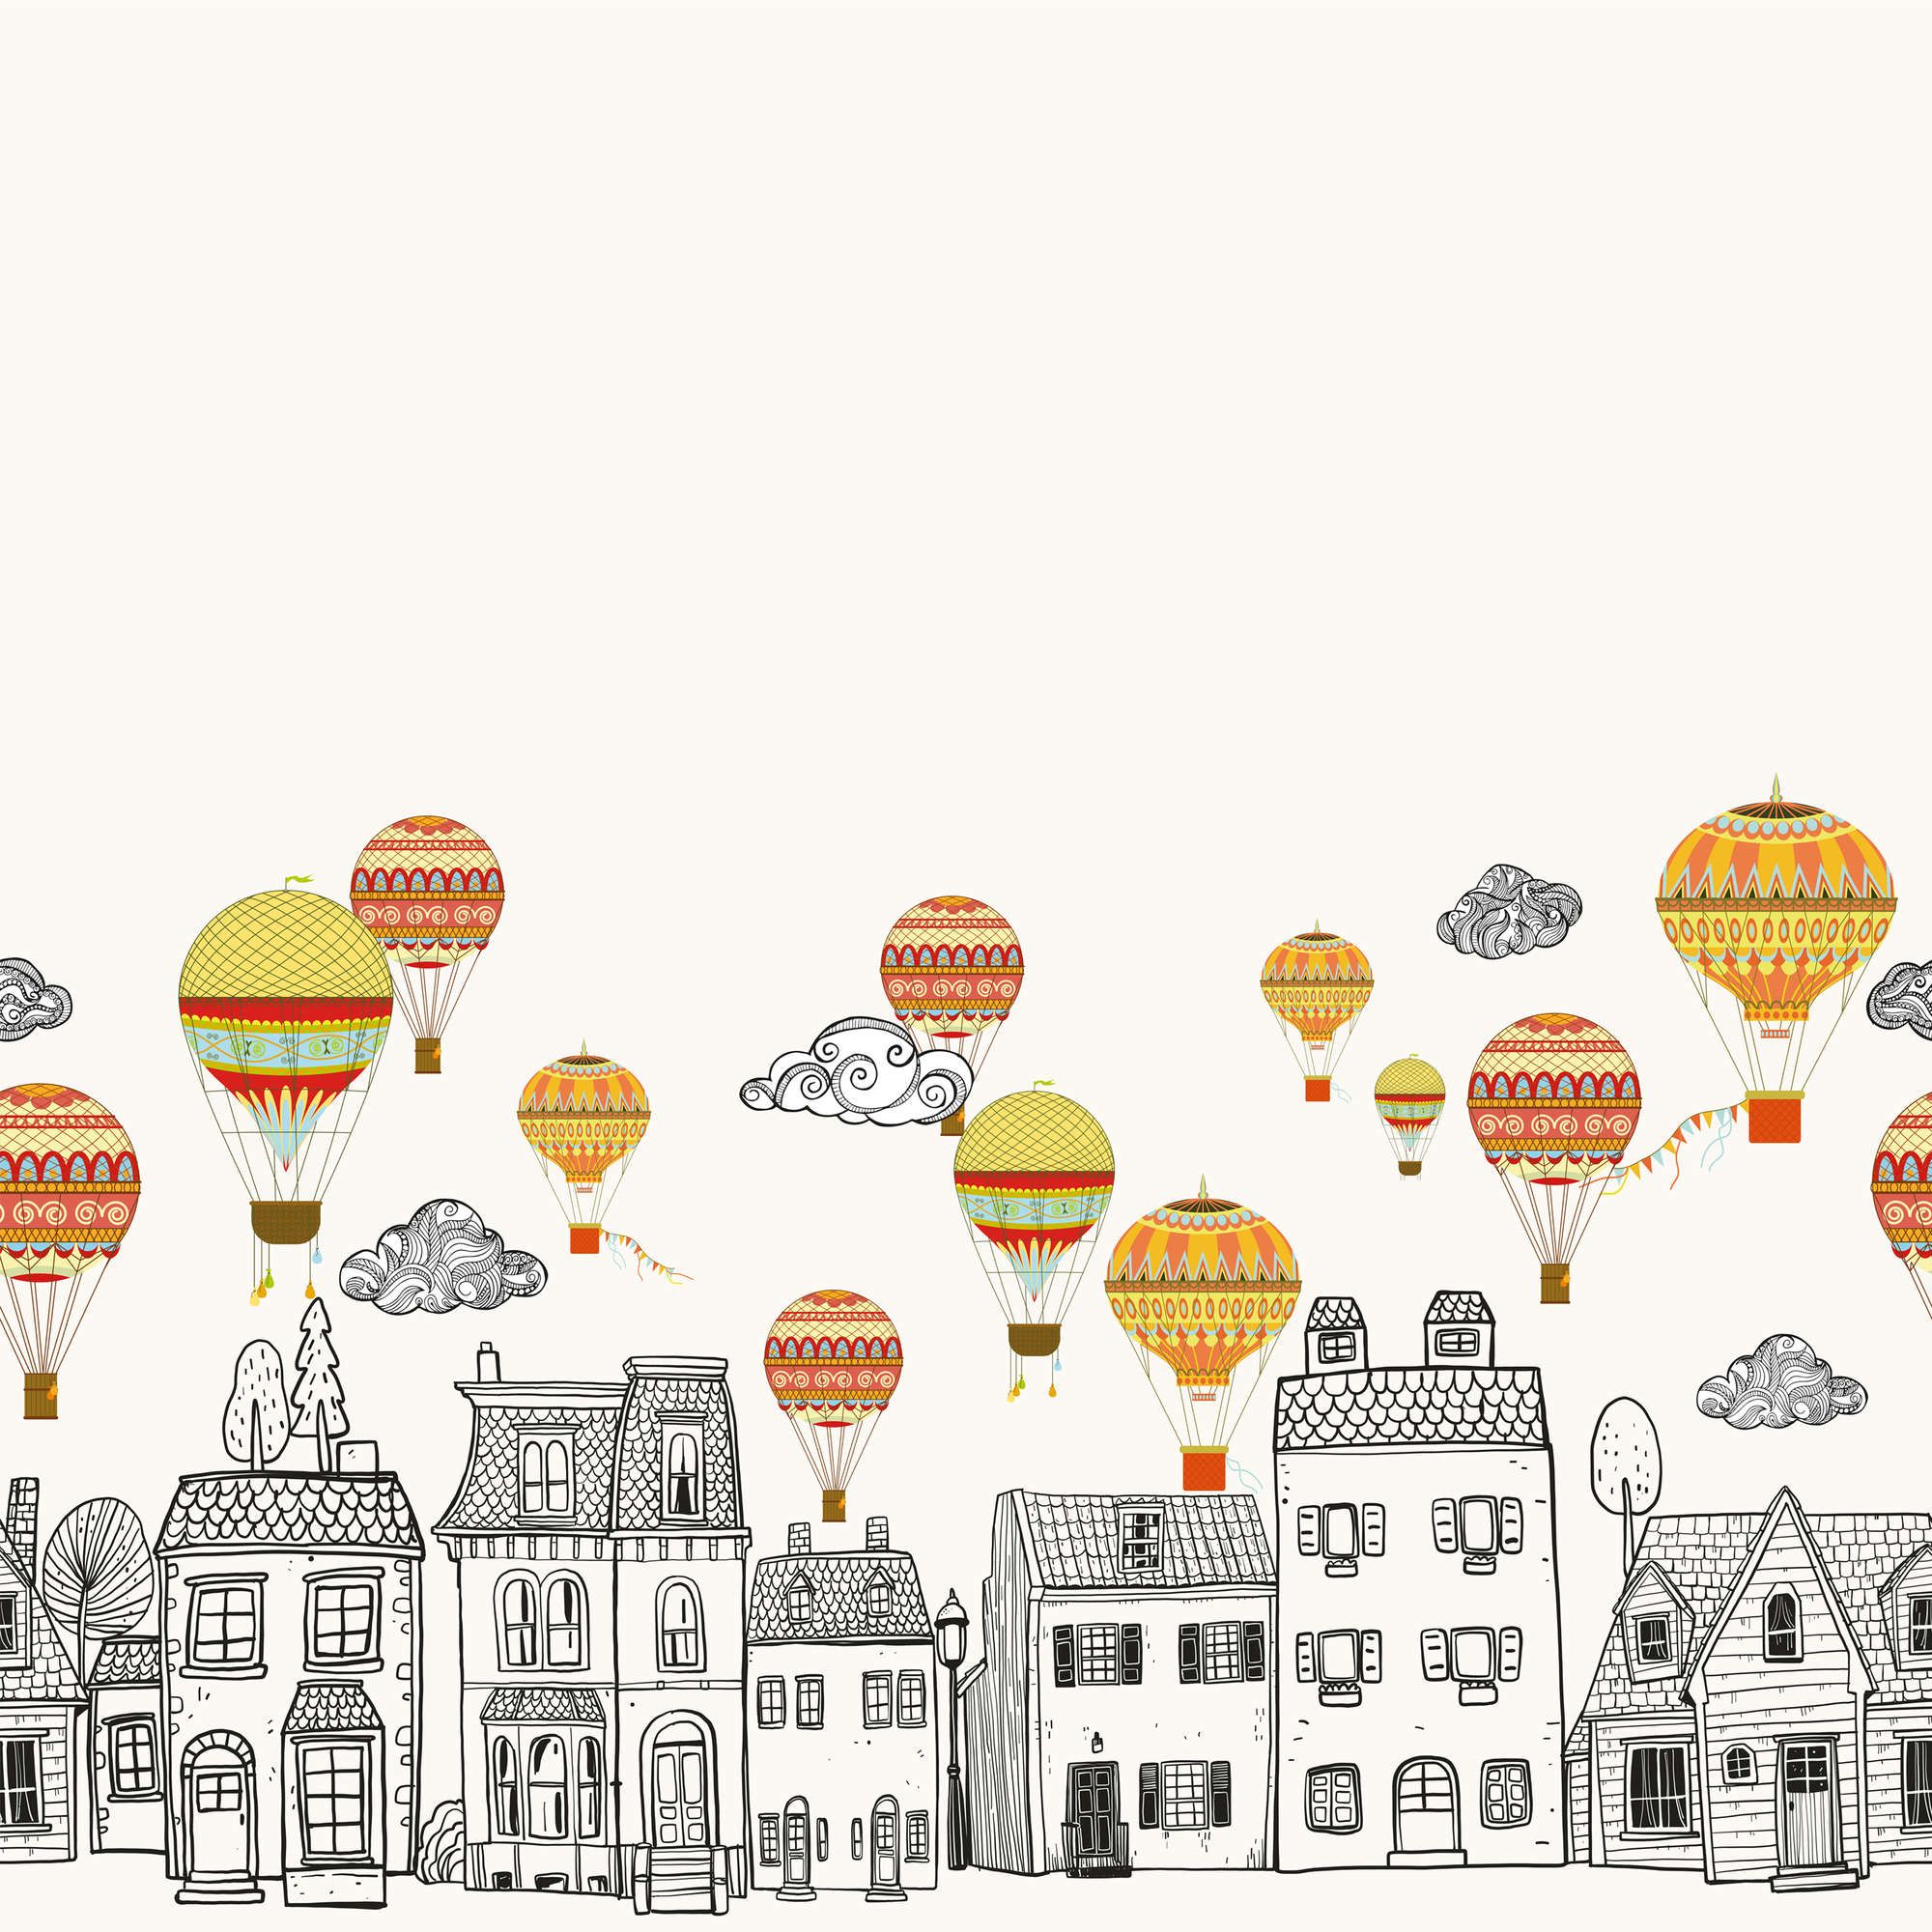             Kleine stad met heteluchtballonnen Onderlaag behang - Glad & Lichtglanzend Niet-geweven
        